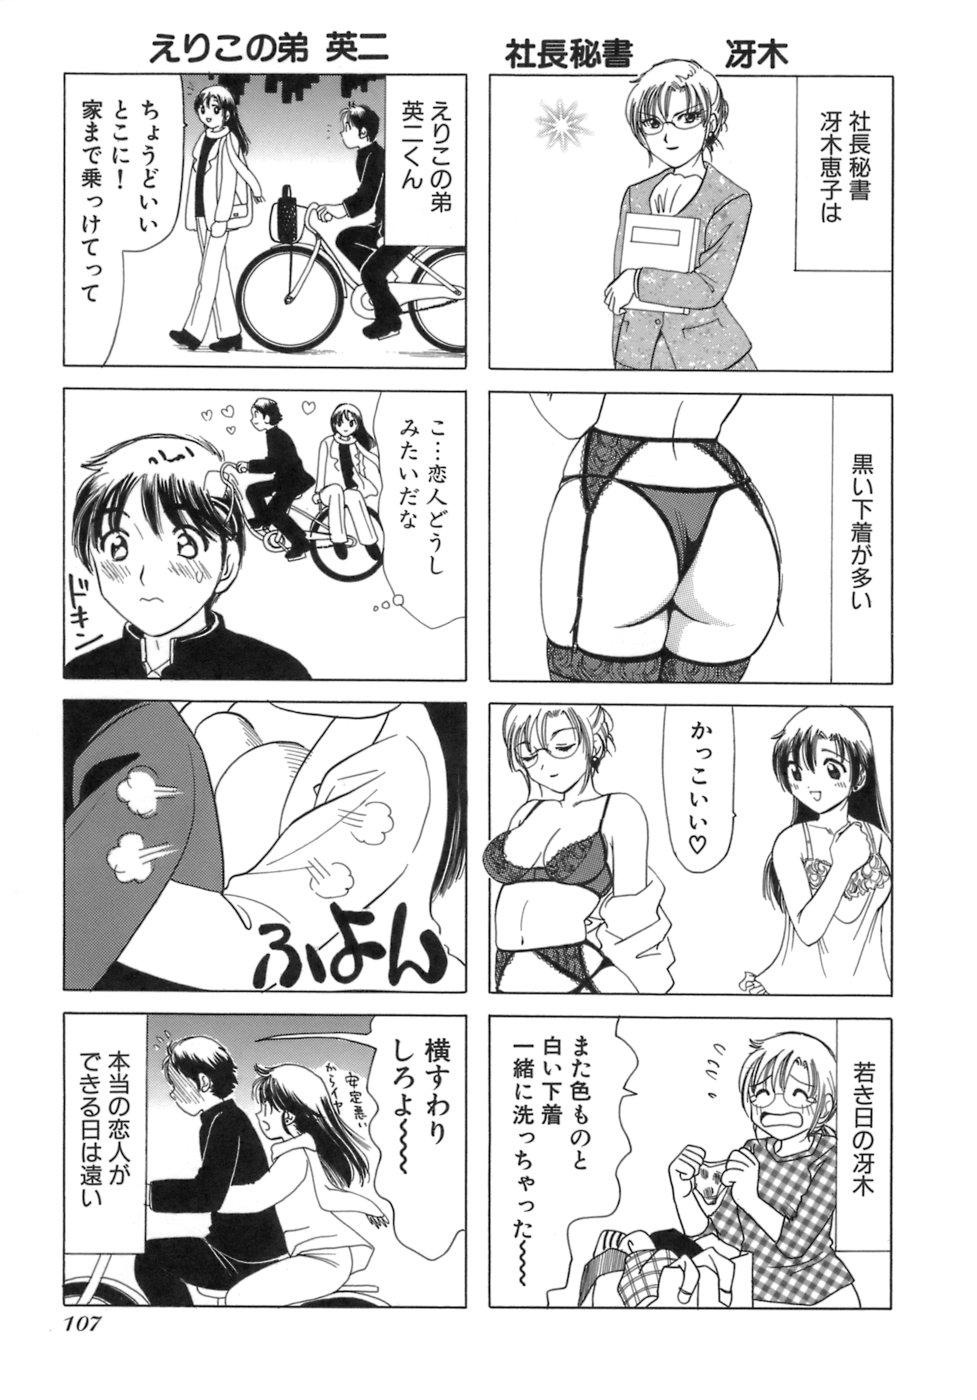 Eriko-kun, Ocha!! Vol.03 109